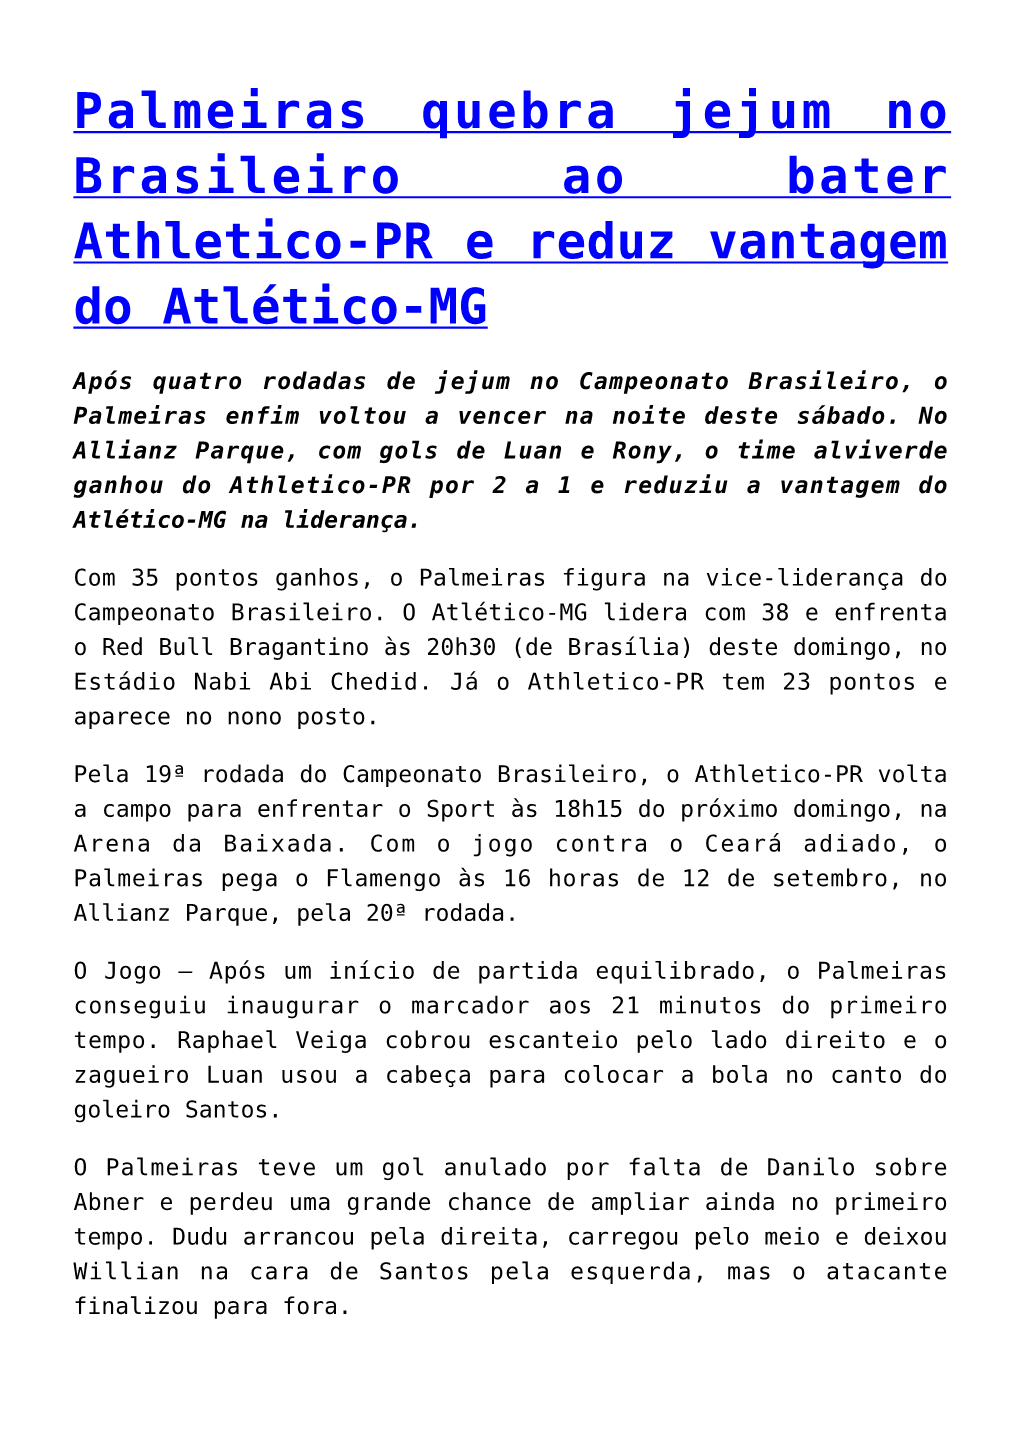 Athletico-PR Vence América-MG De Lisca Em Estreia No Campeonato Brasileiro